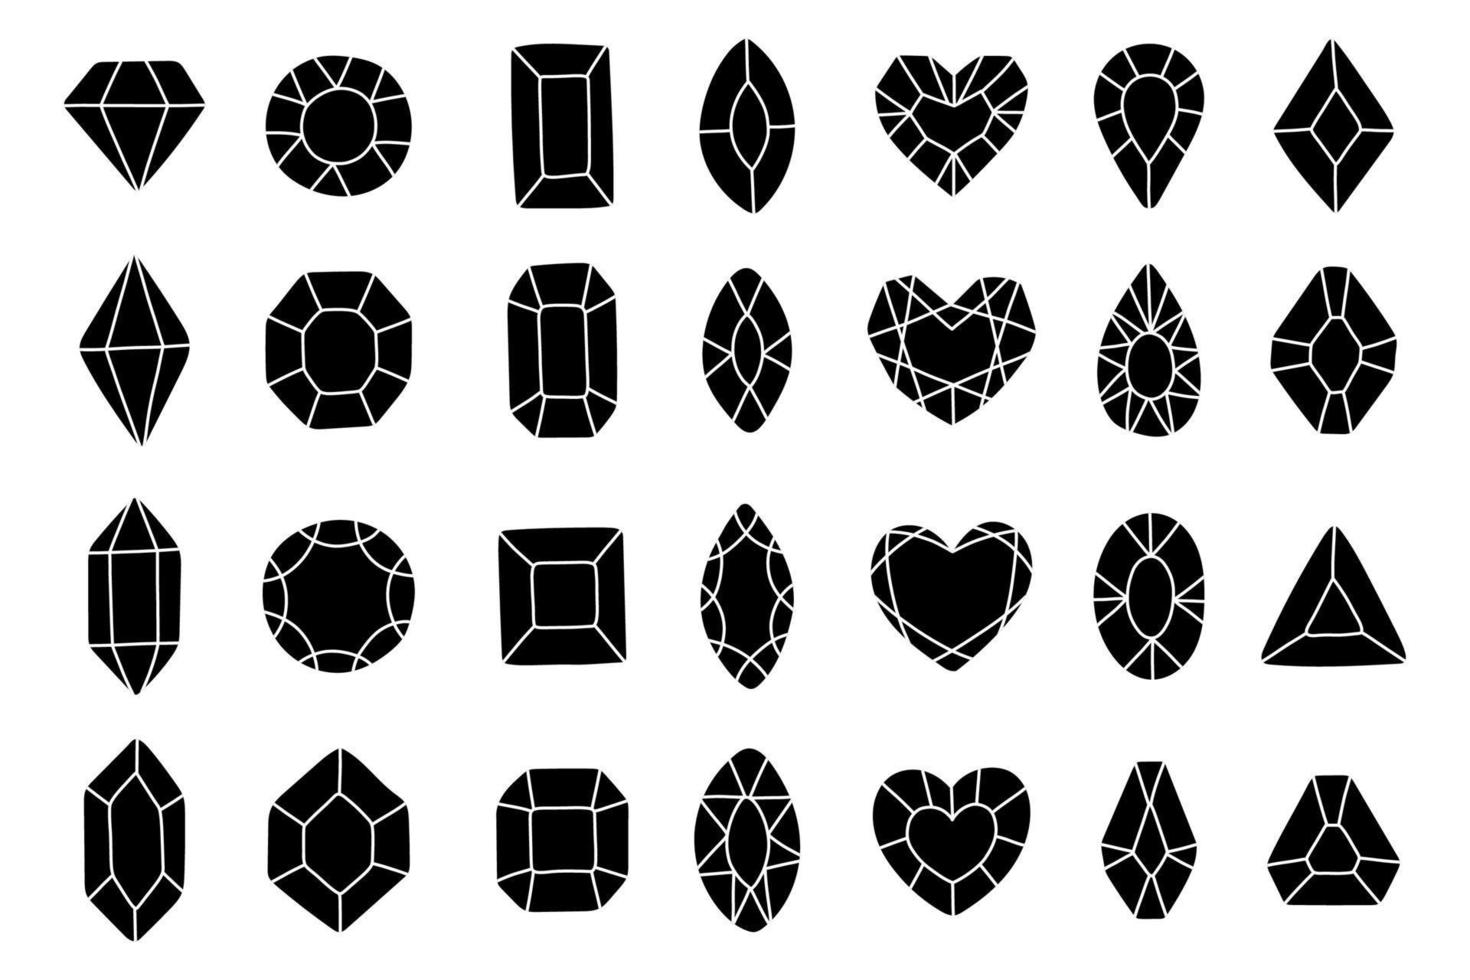 diamant edelstenen sieraden, kristallen collectie, zwart-wit pictogrammenset vectorillustratie vector